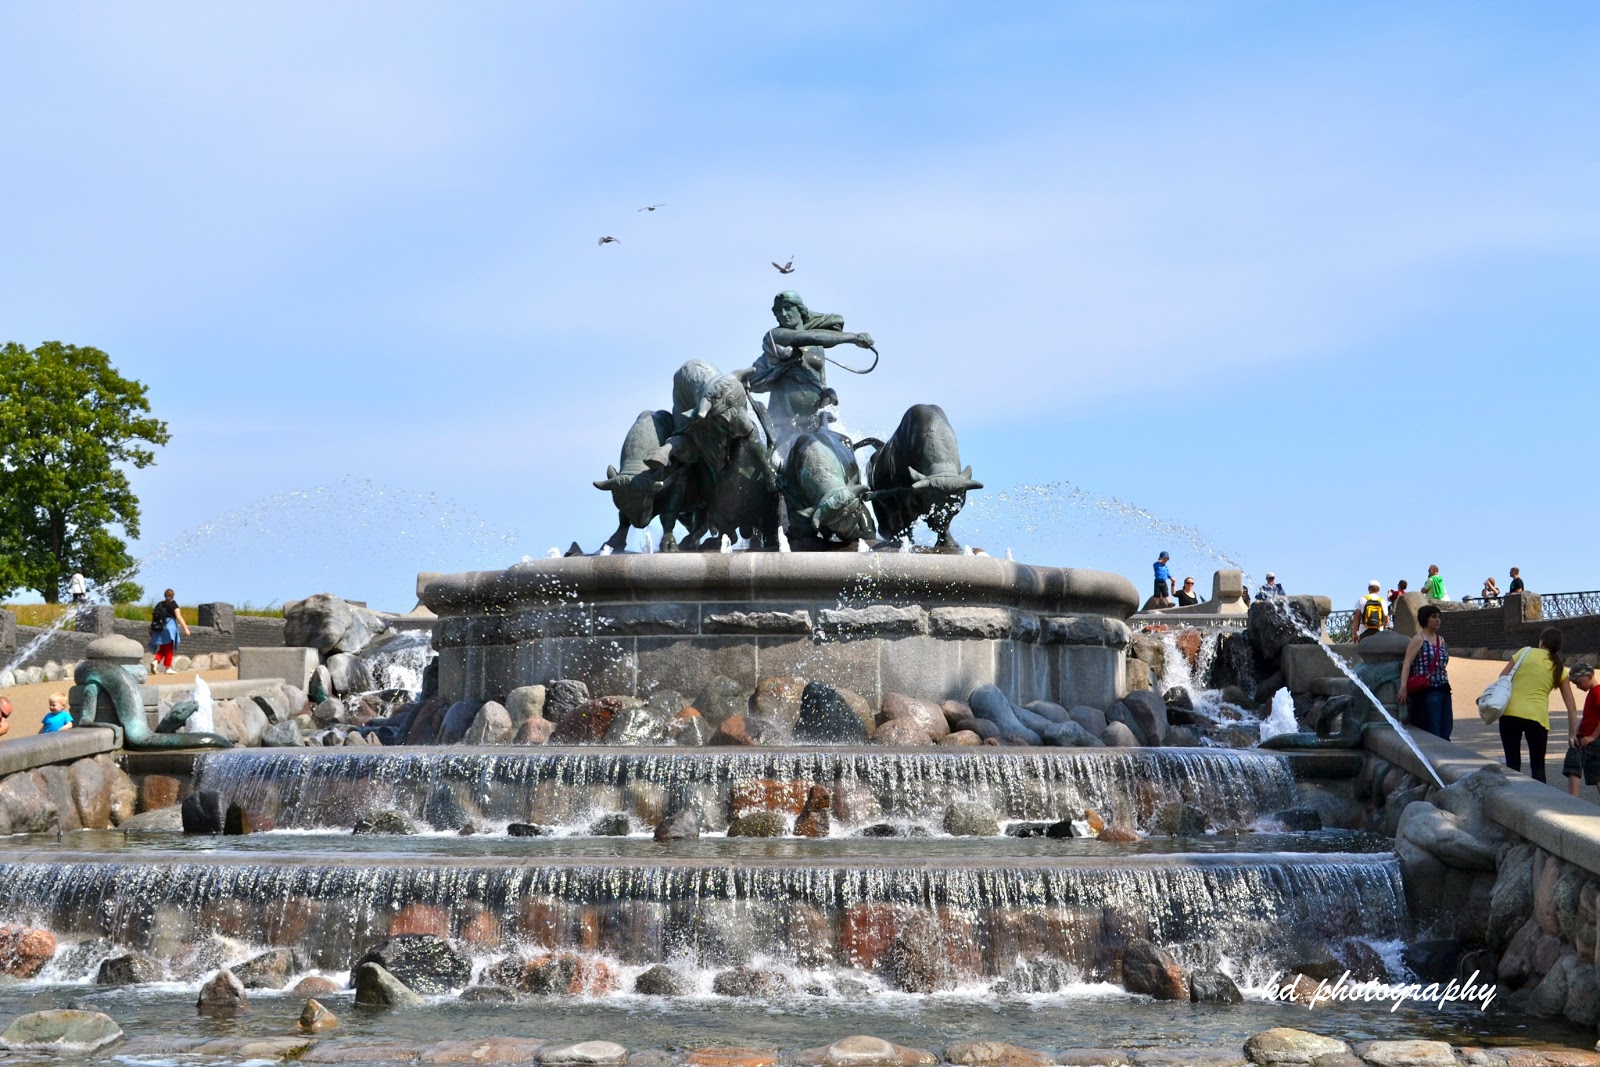 Copenhagen's Gefion Fountain